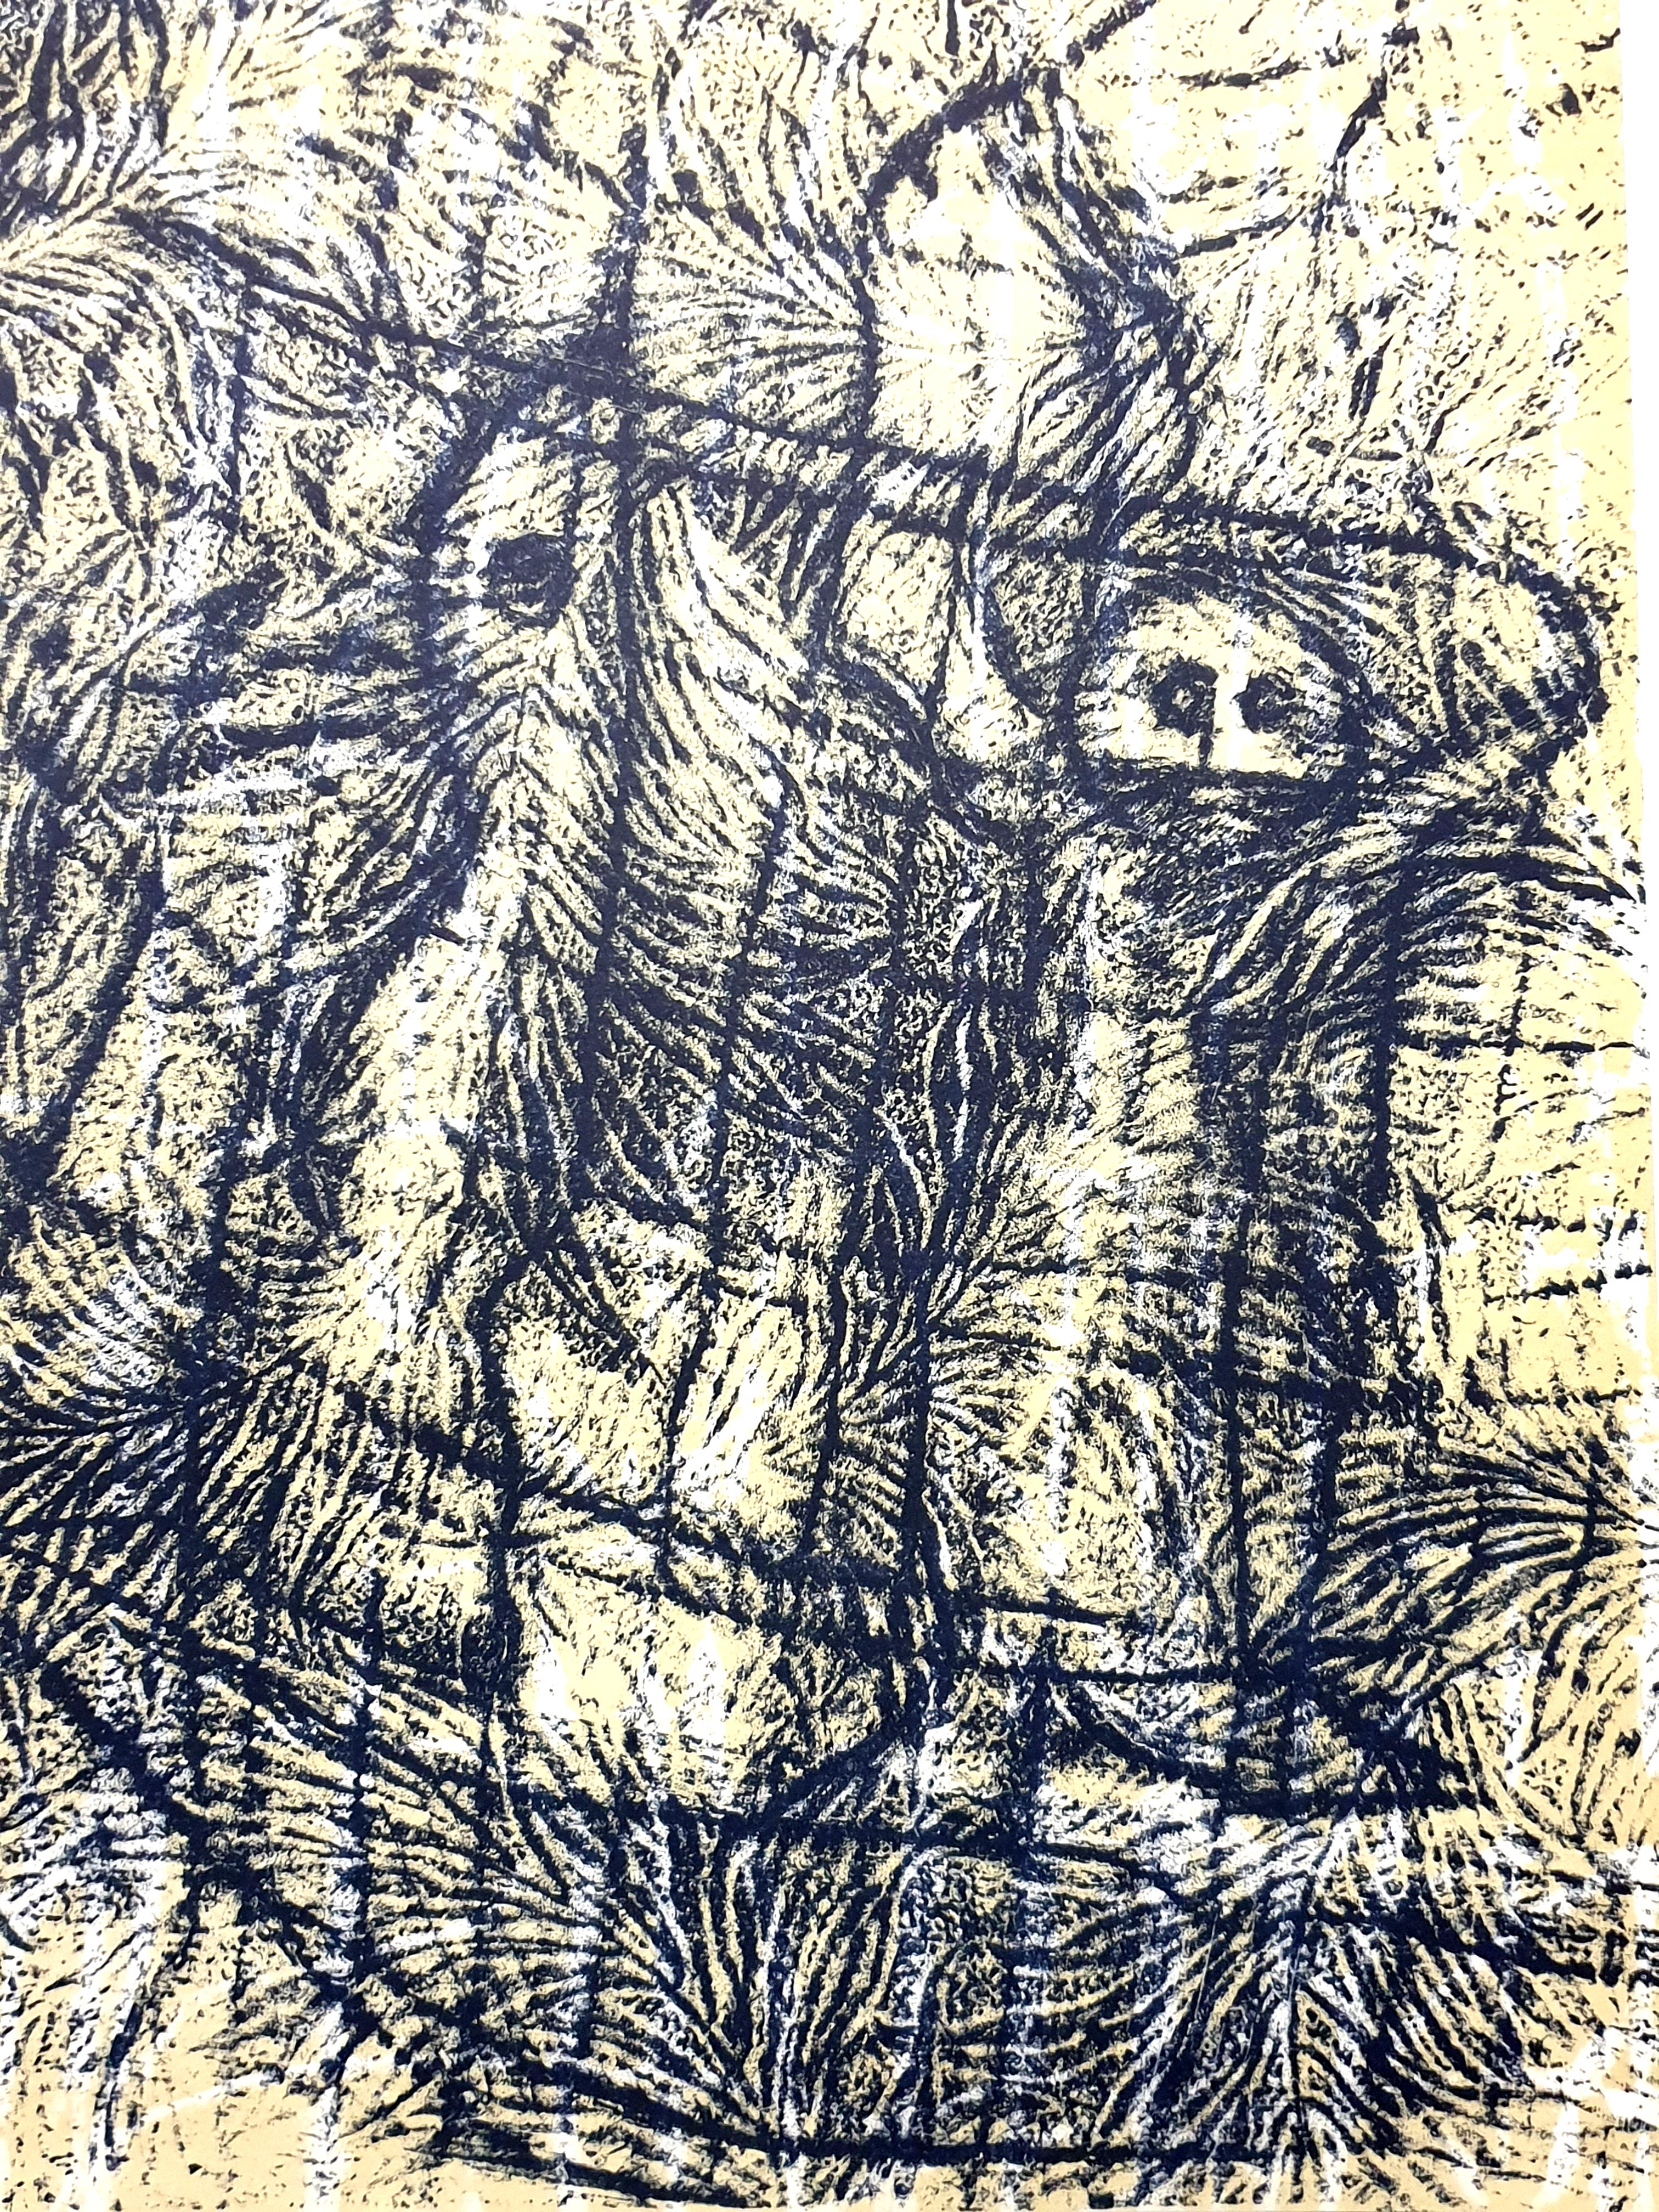 Max Ernst – Komposition – Originallithographie
1958
Abmessungen: 32 x 24 cm
XXe siècle
Unsigniert und nicht nummeriert, wie ausgegeben

Max Ernst wurde in Brühl, einem Ort in der Nähe von Köln, in Deutschland geboren. Er wuchs in einer streng